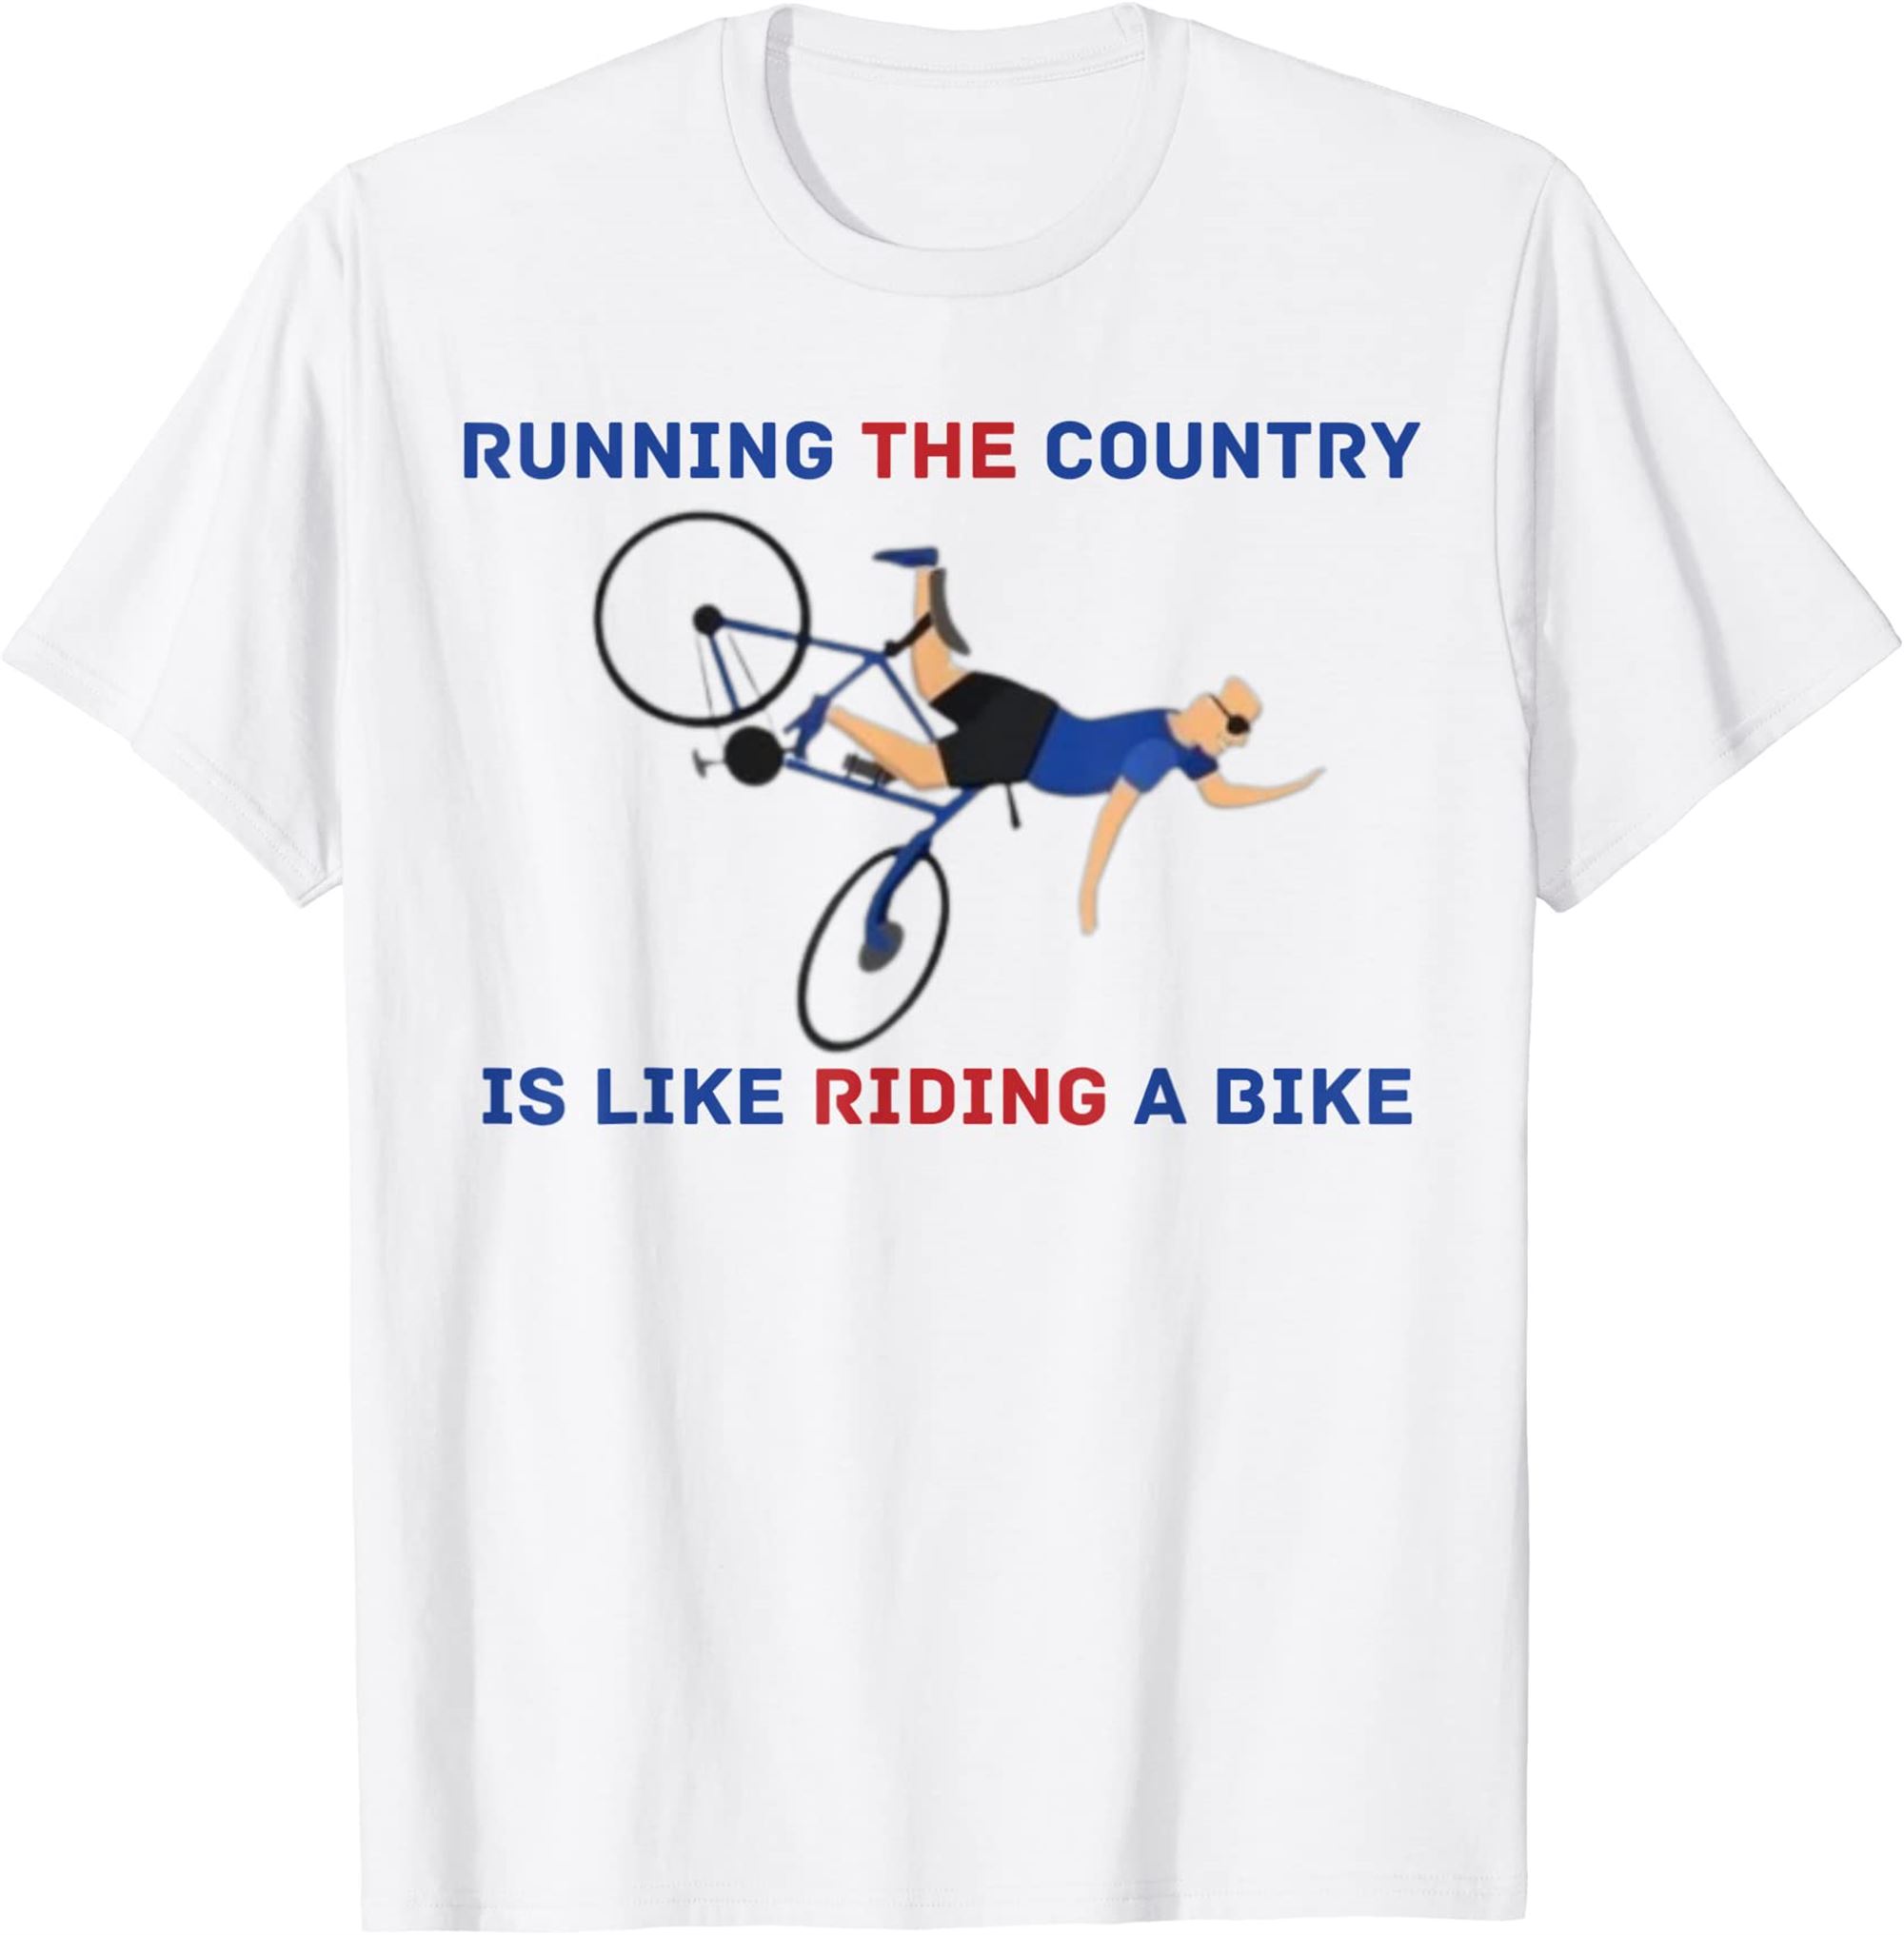 Joe Biden Falling Off Bicycle Biden Bike Meme Funny T-shirt Full Size Up To 5xl